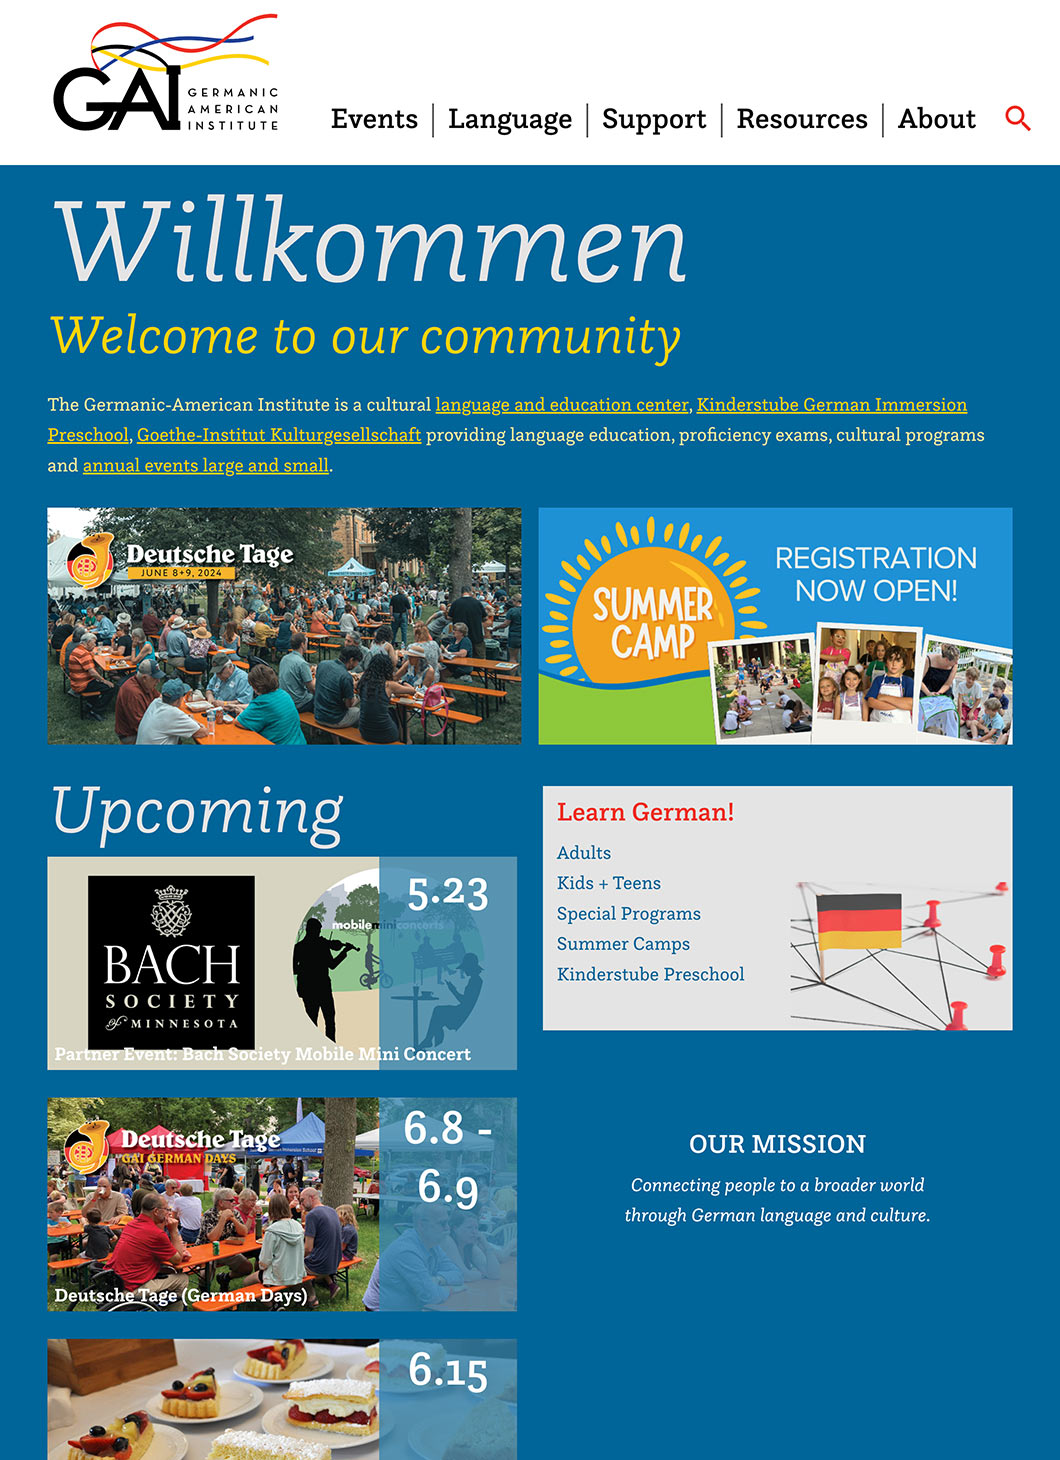 Germanic-American Institute homepage